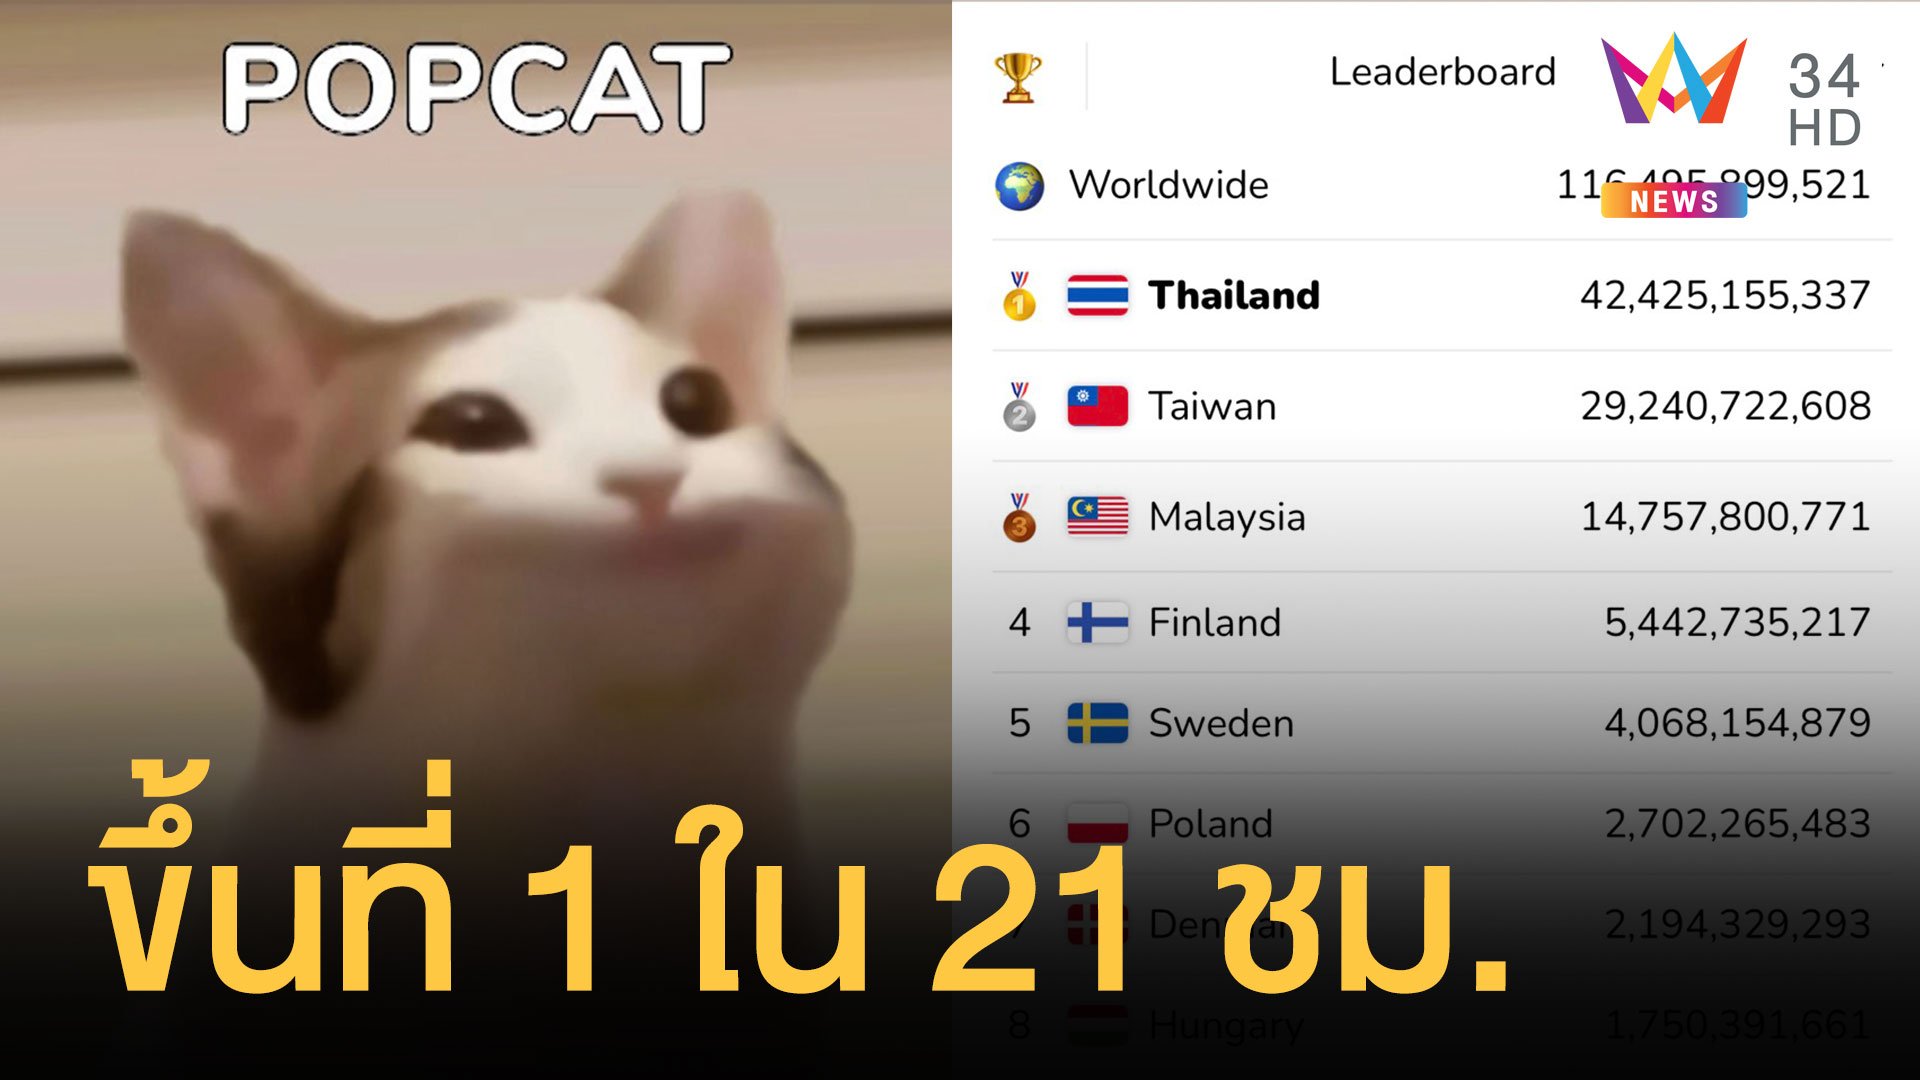 ไทยทะยานแชมป์ POPCAT แมวอ้าปาก ใน 21 ชั่วโมง | ข่าวอรุณอมรินทร์ | 16 ส.ค. 64 | AMARIN TVHD34